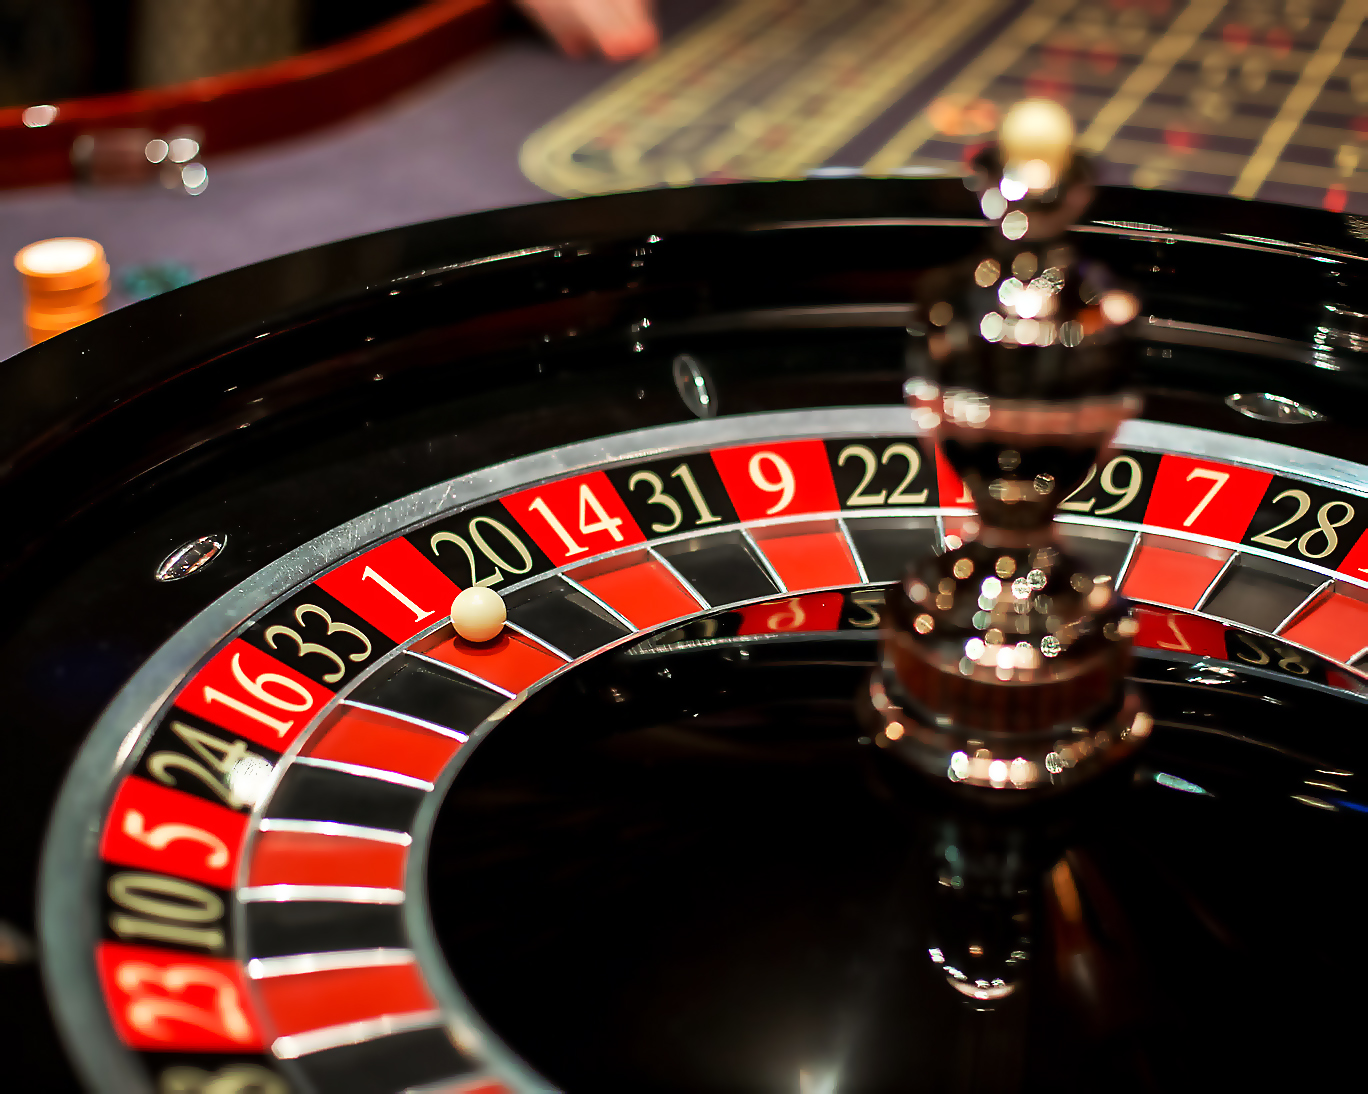 Казино Вулкан онлайн играть бесплатно без регистрации в Casino.